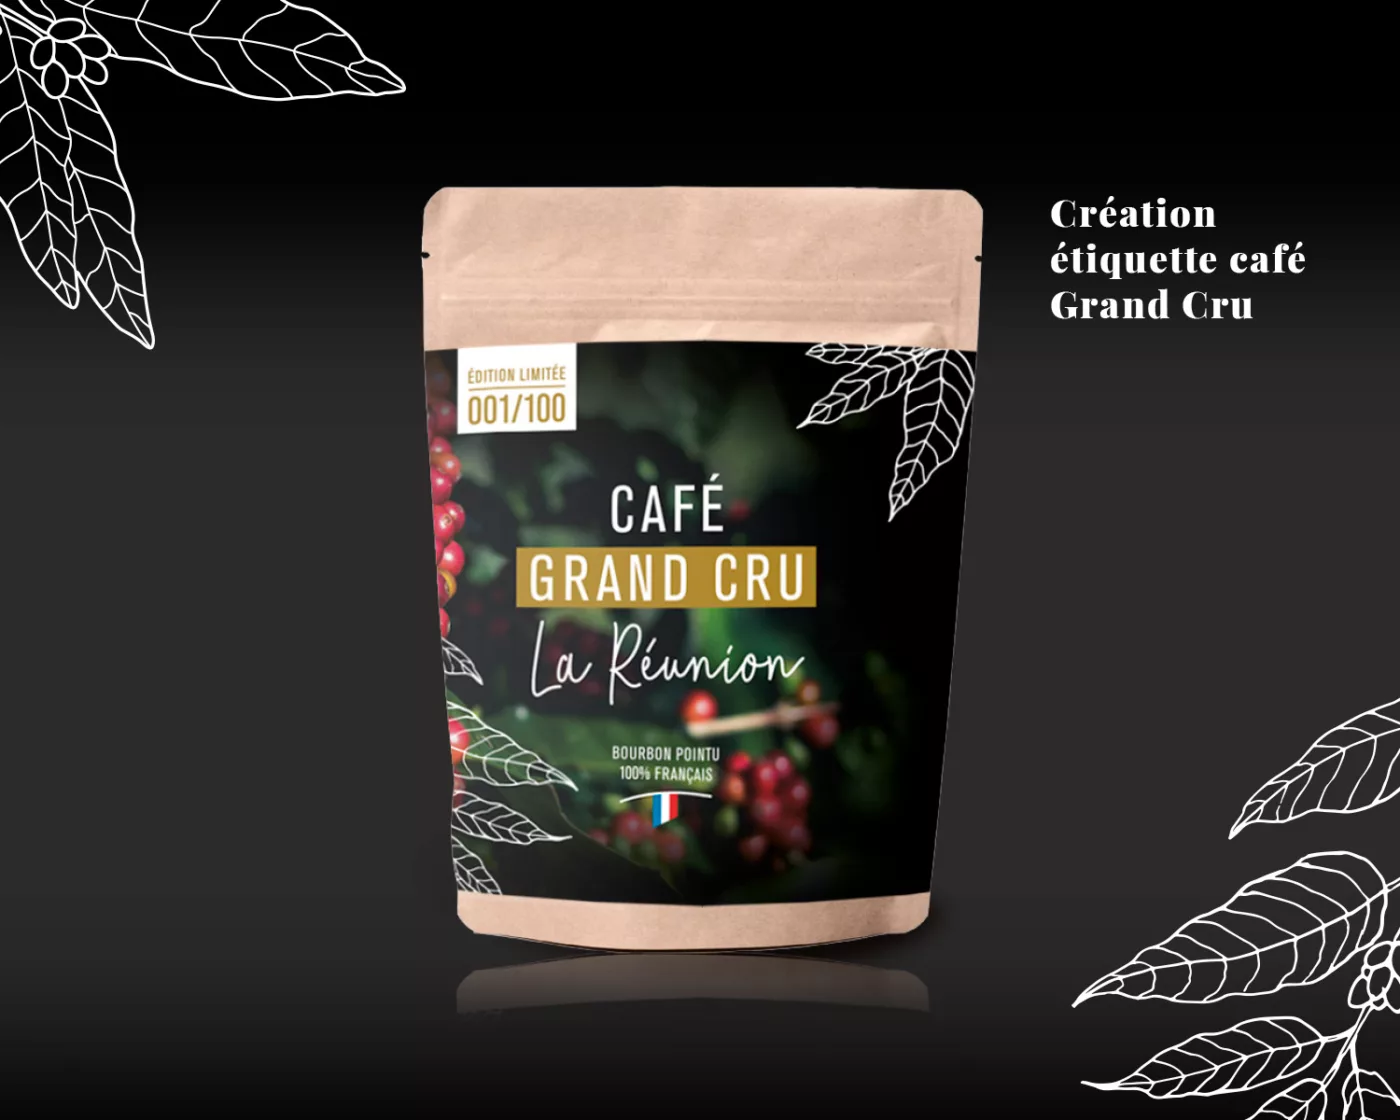 Création d'une étiquette de café Grand Cru La Réunion pour Le Caféier, artisan torréfacteur à Cholet